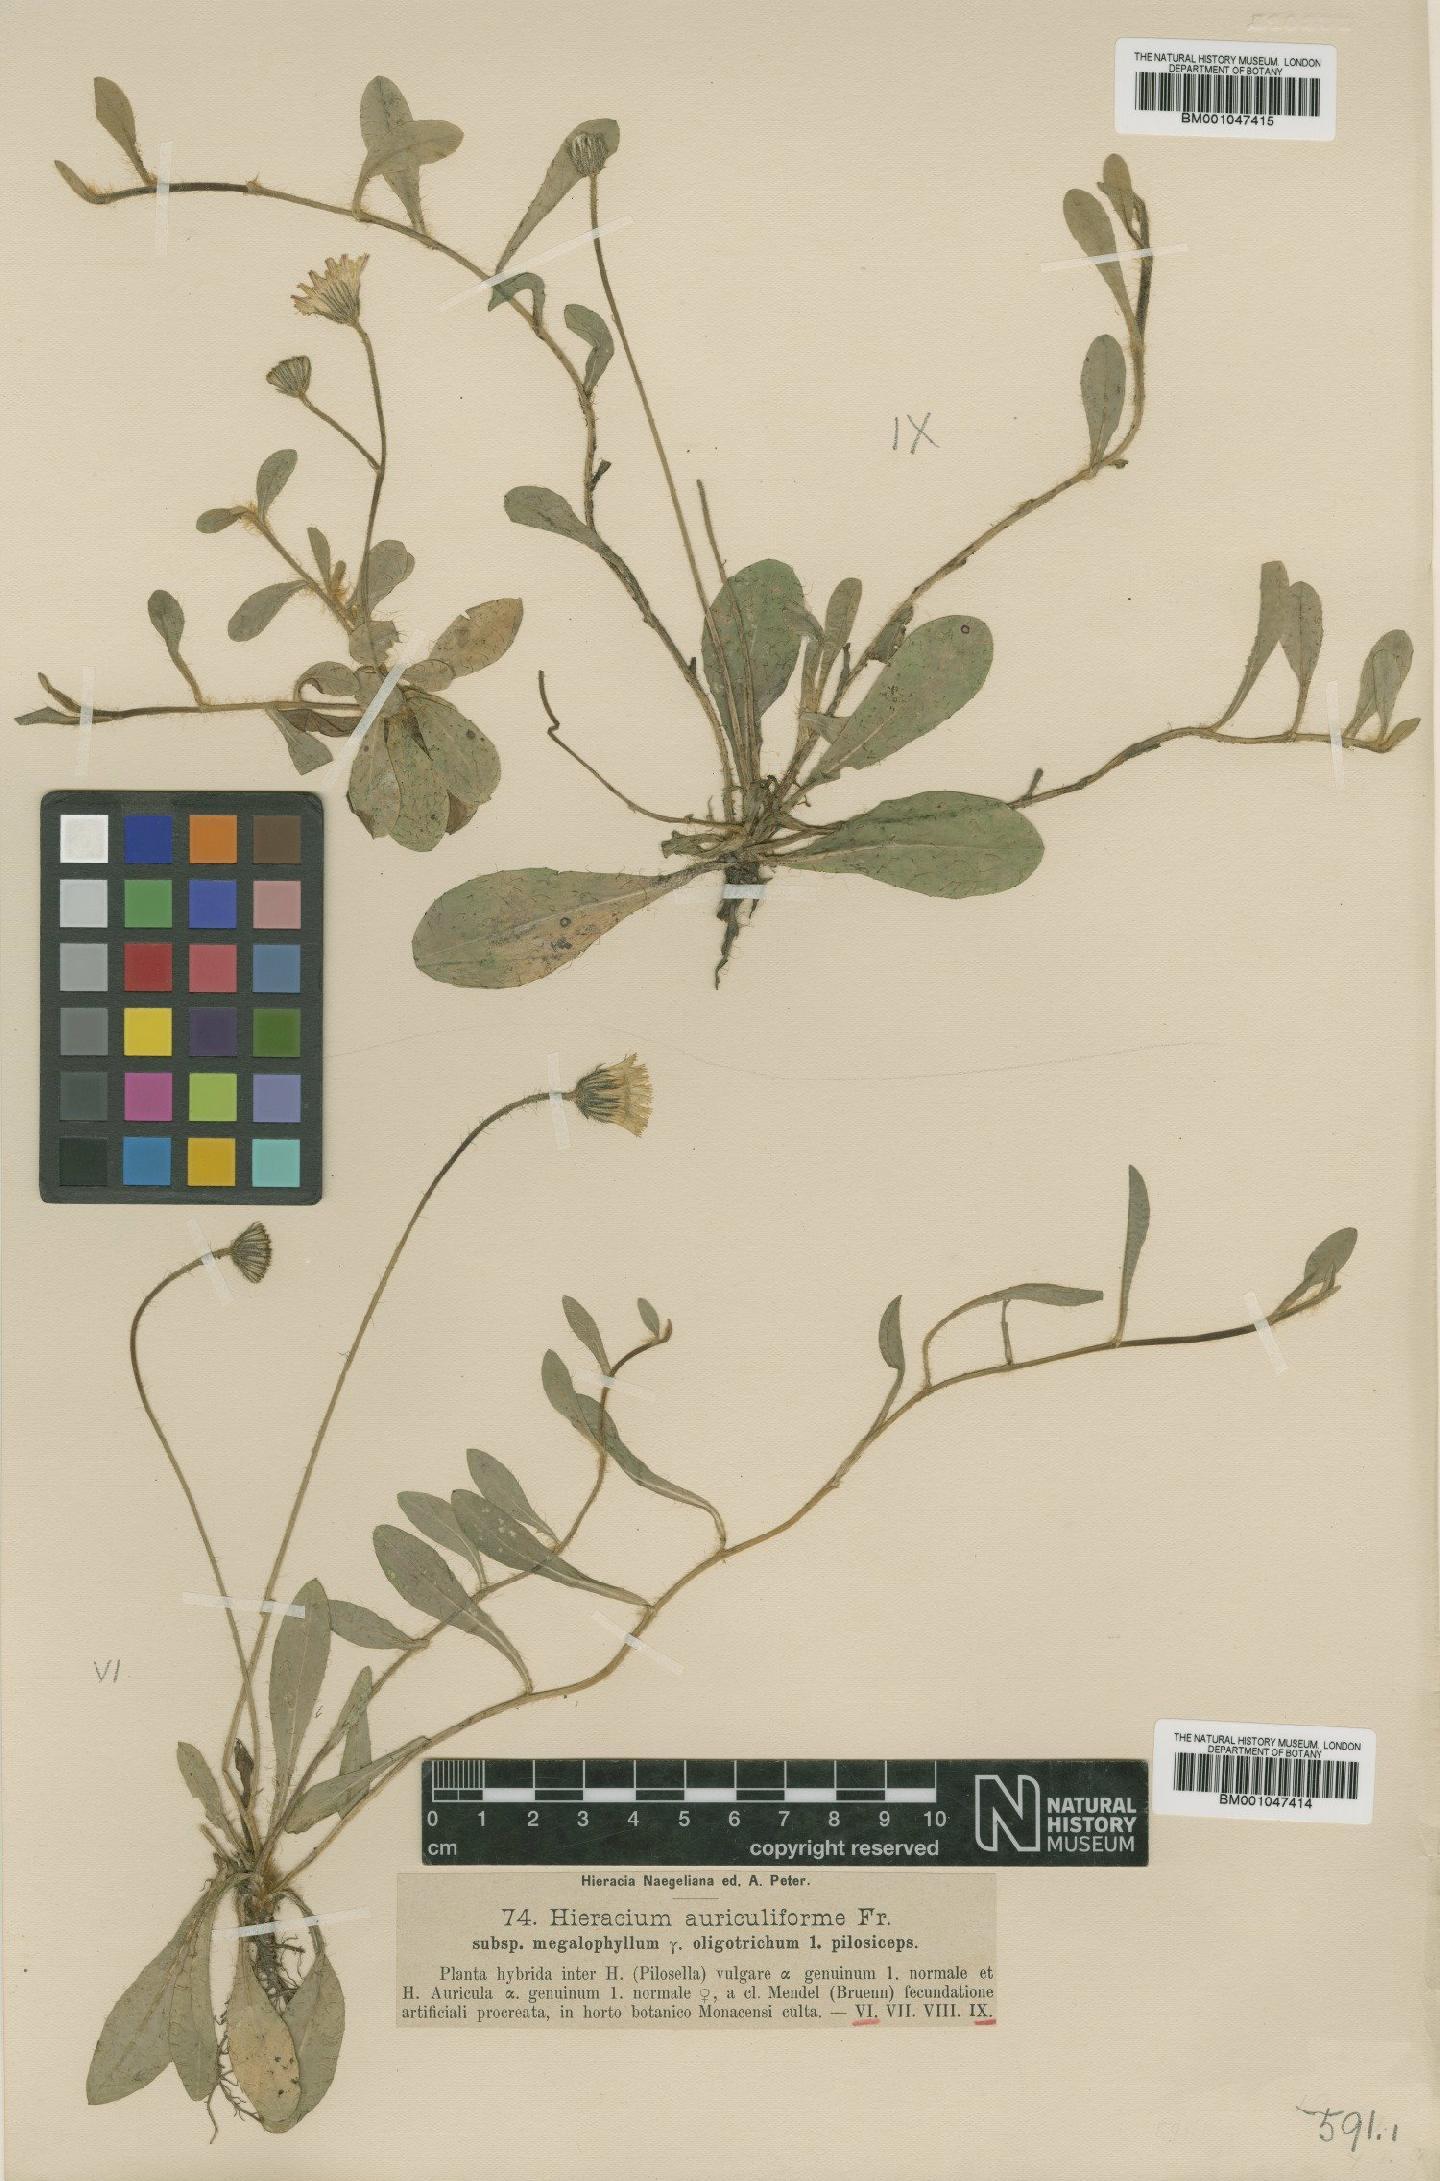 To NHMUK collection (Hieracium schultesii subsp. megalophyllum (Nägeli & Peter) Zahn; NHMUK:ecatalogue:2762708)